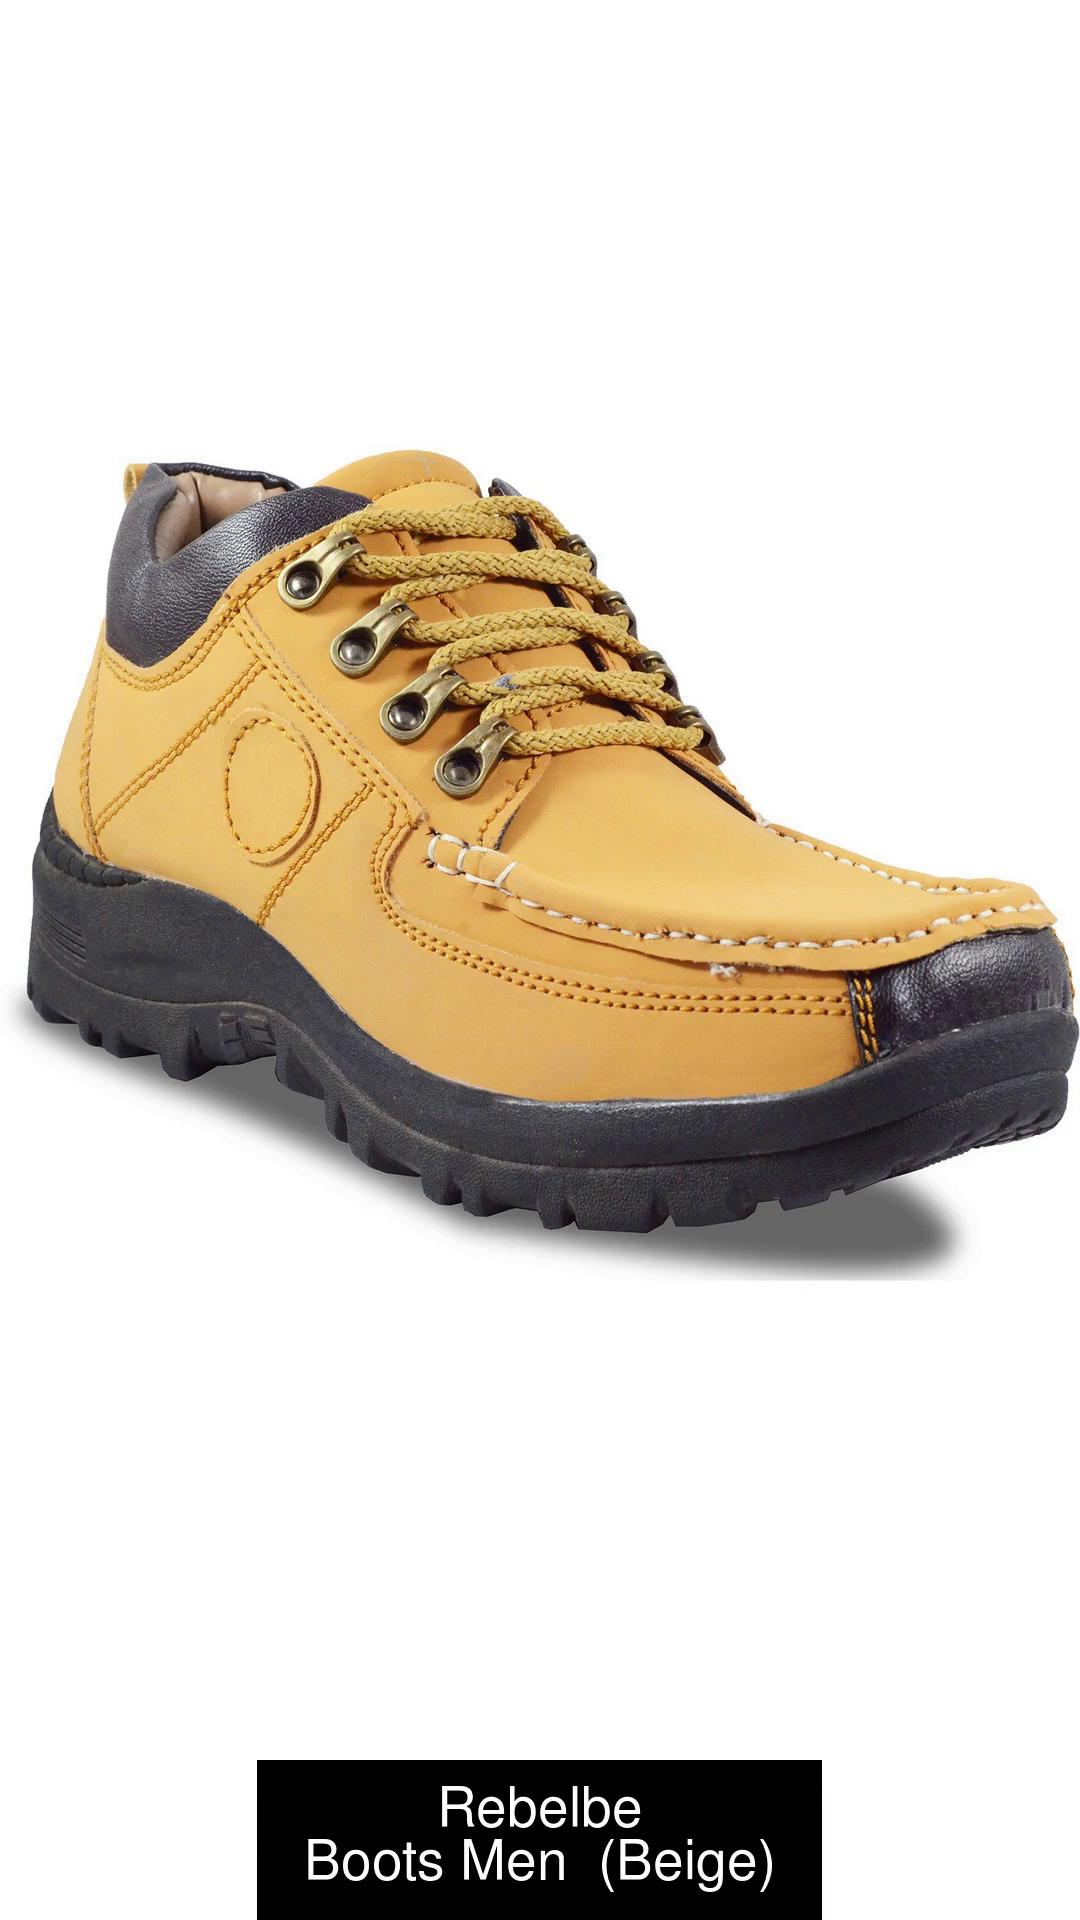 Men's boots, Outdoor boots